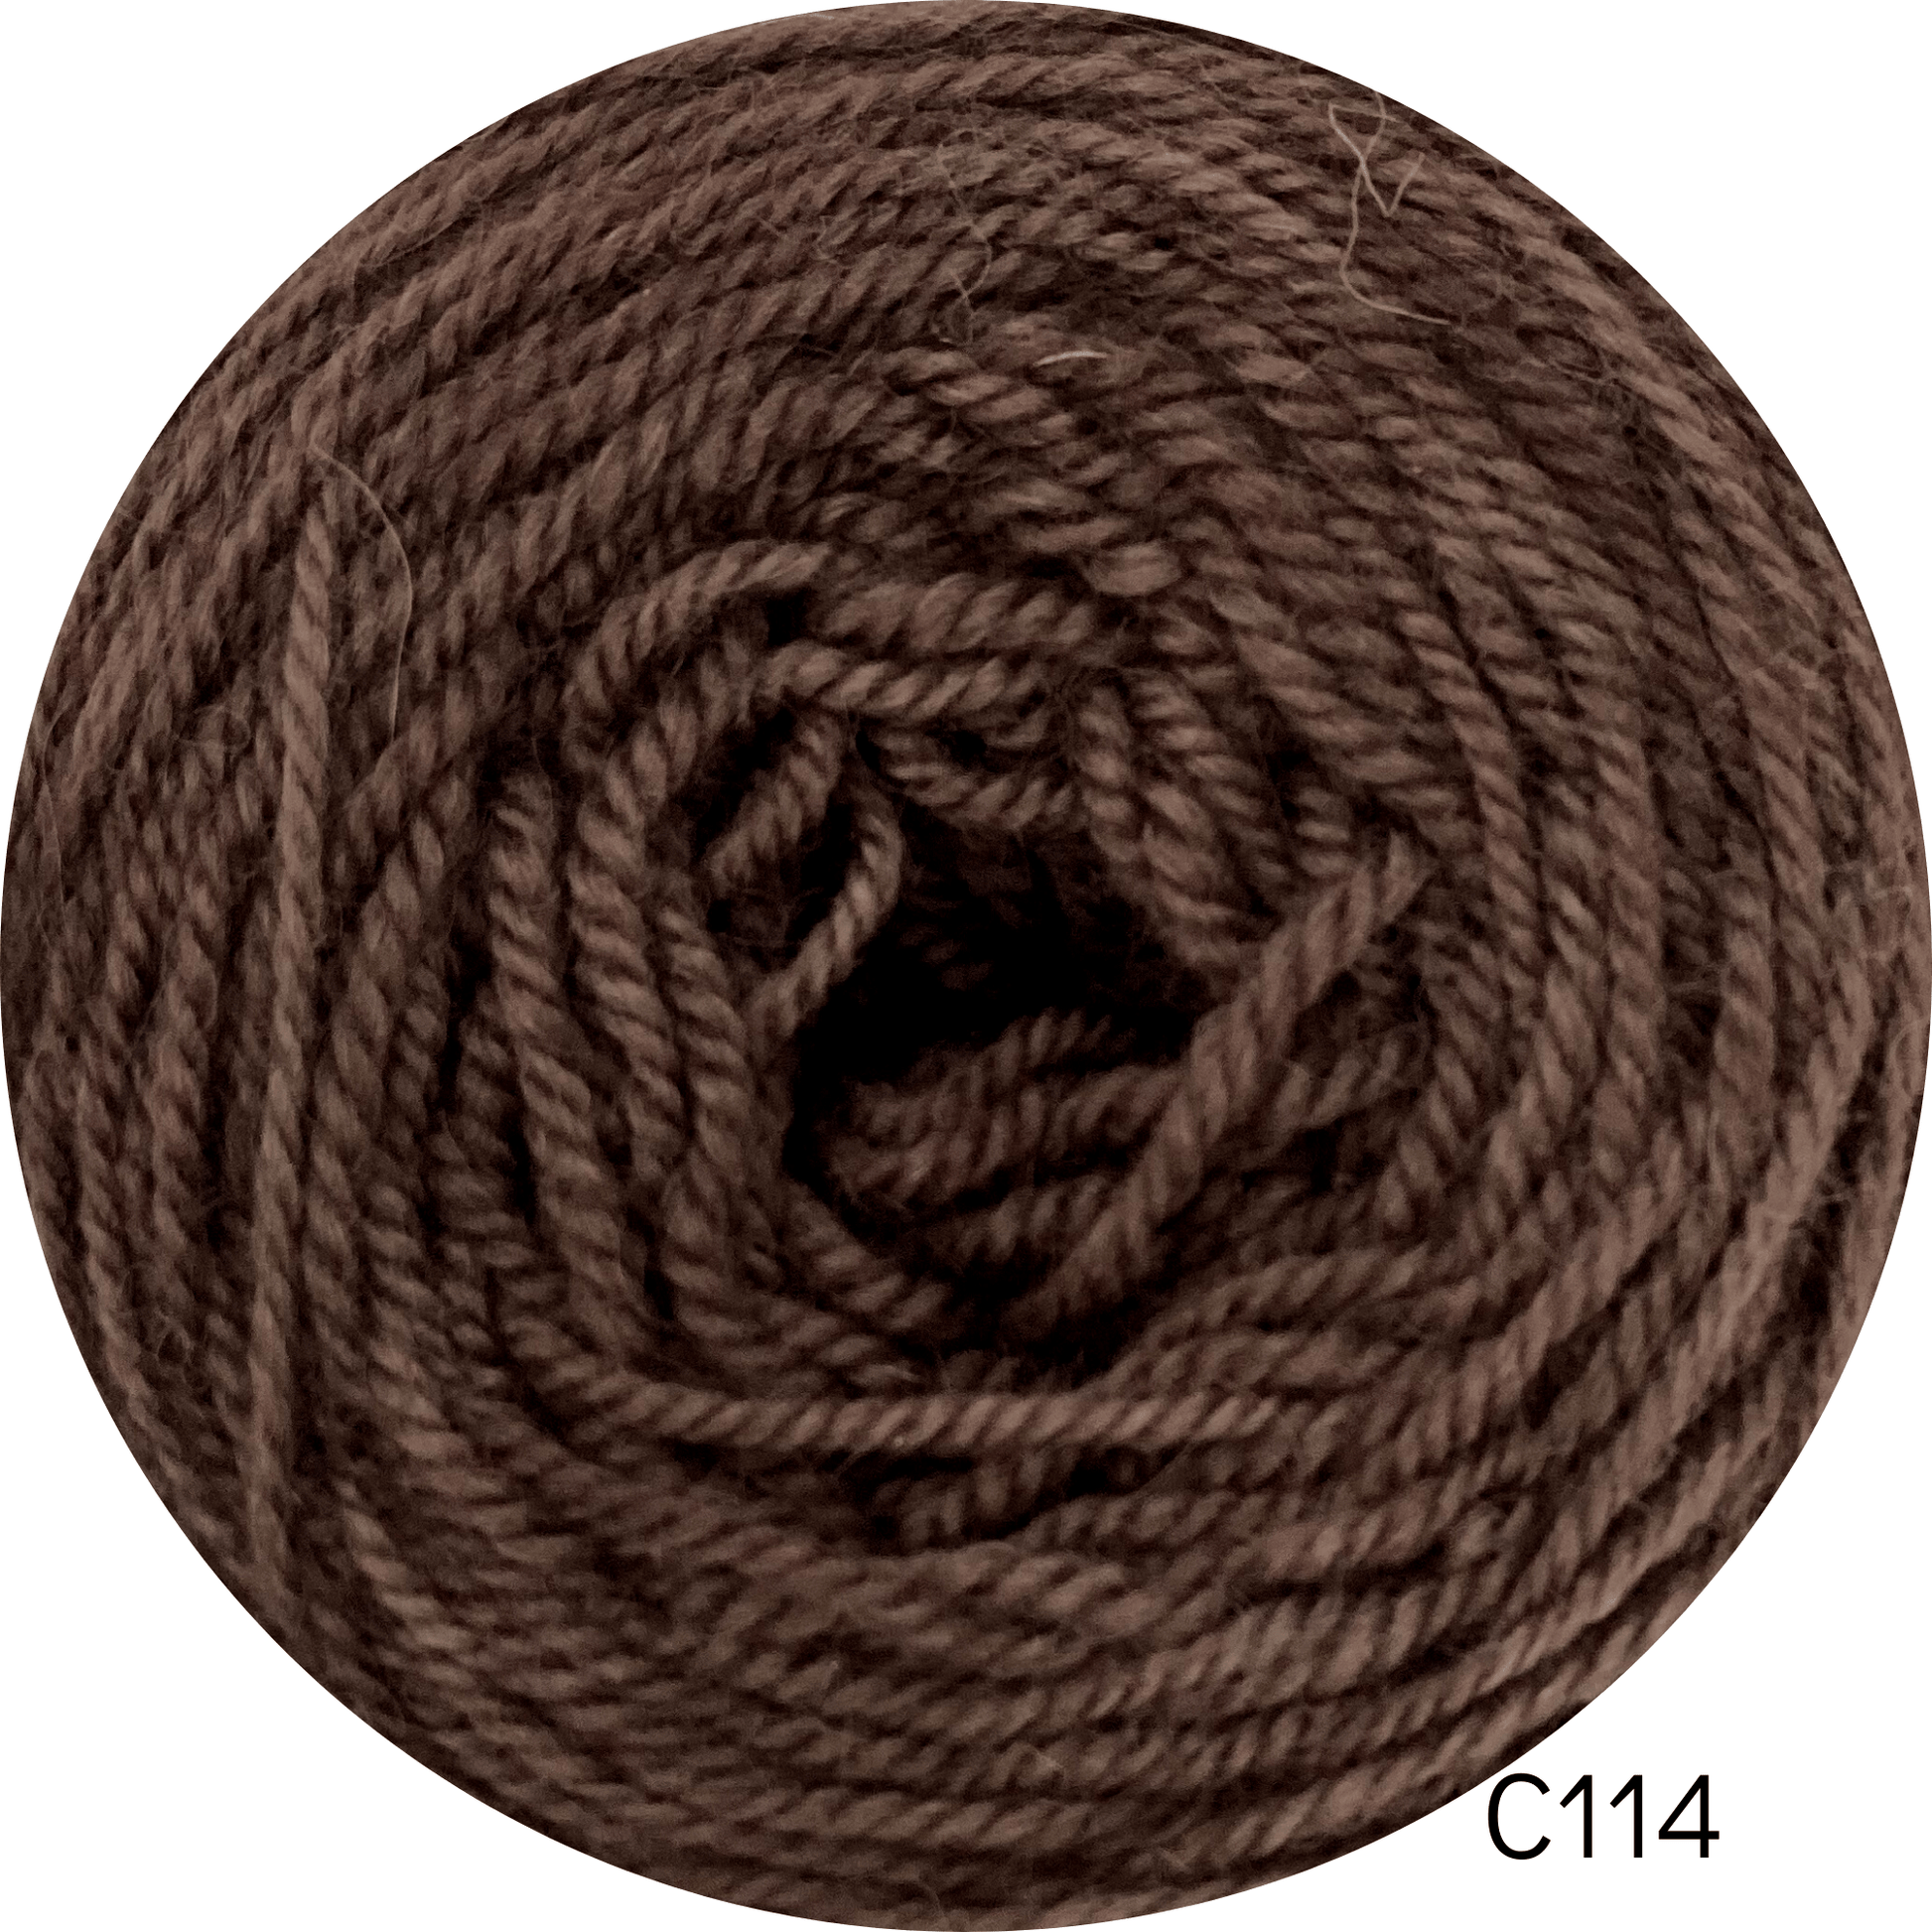 Coromina lana natural 20 grs C114 20GRS Atacama